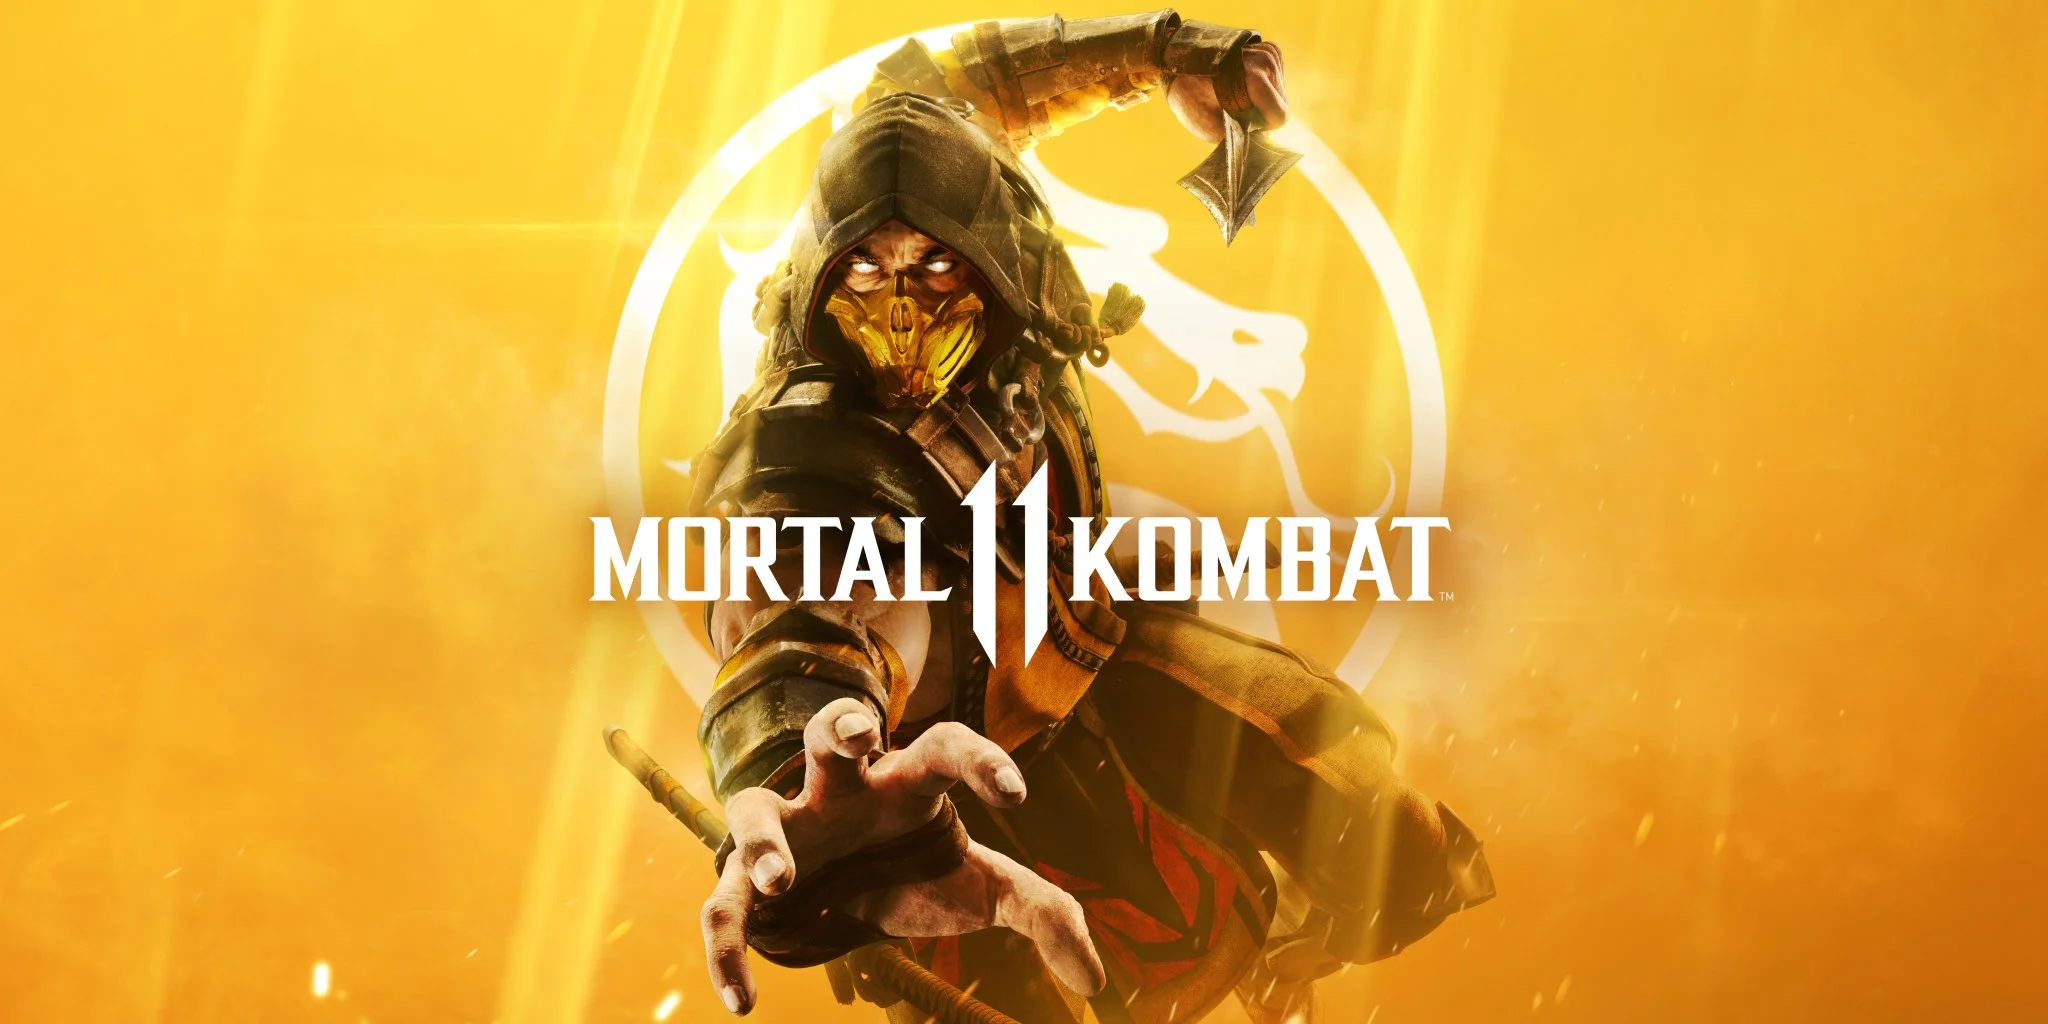 Взгляните на Скорпиона, Рейдена и Шао-Кана на новом движке Mortal Kombat XI - фото 2